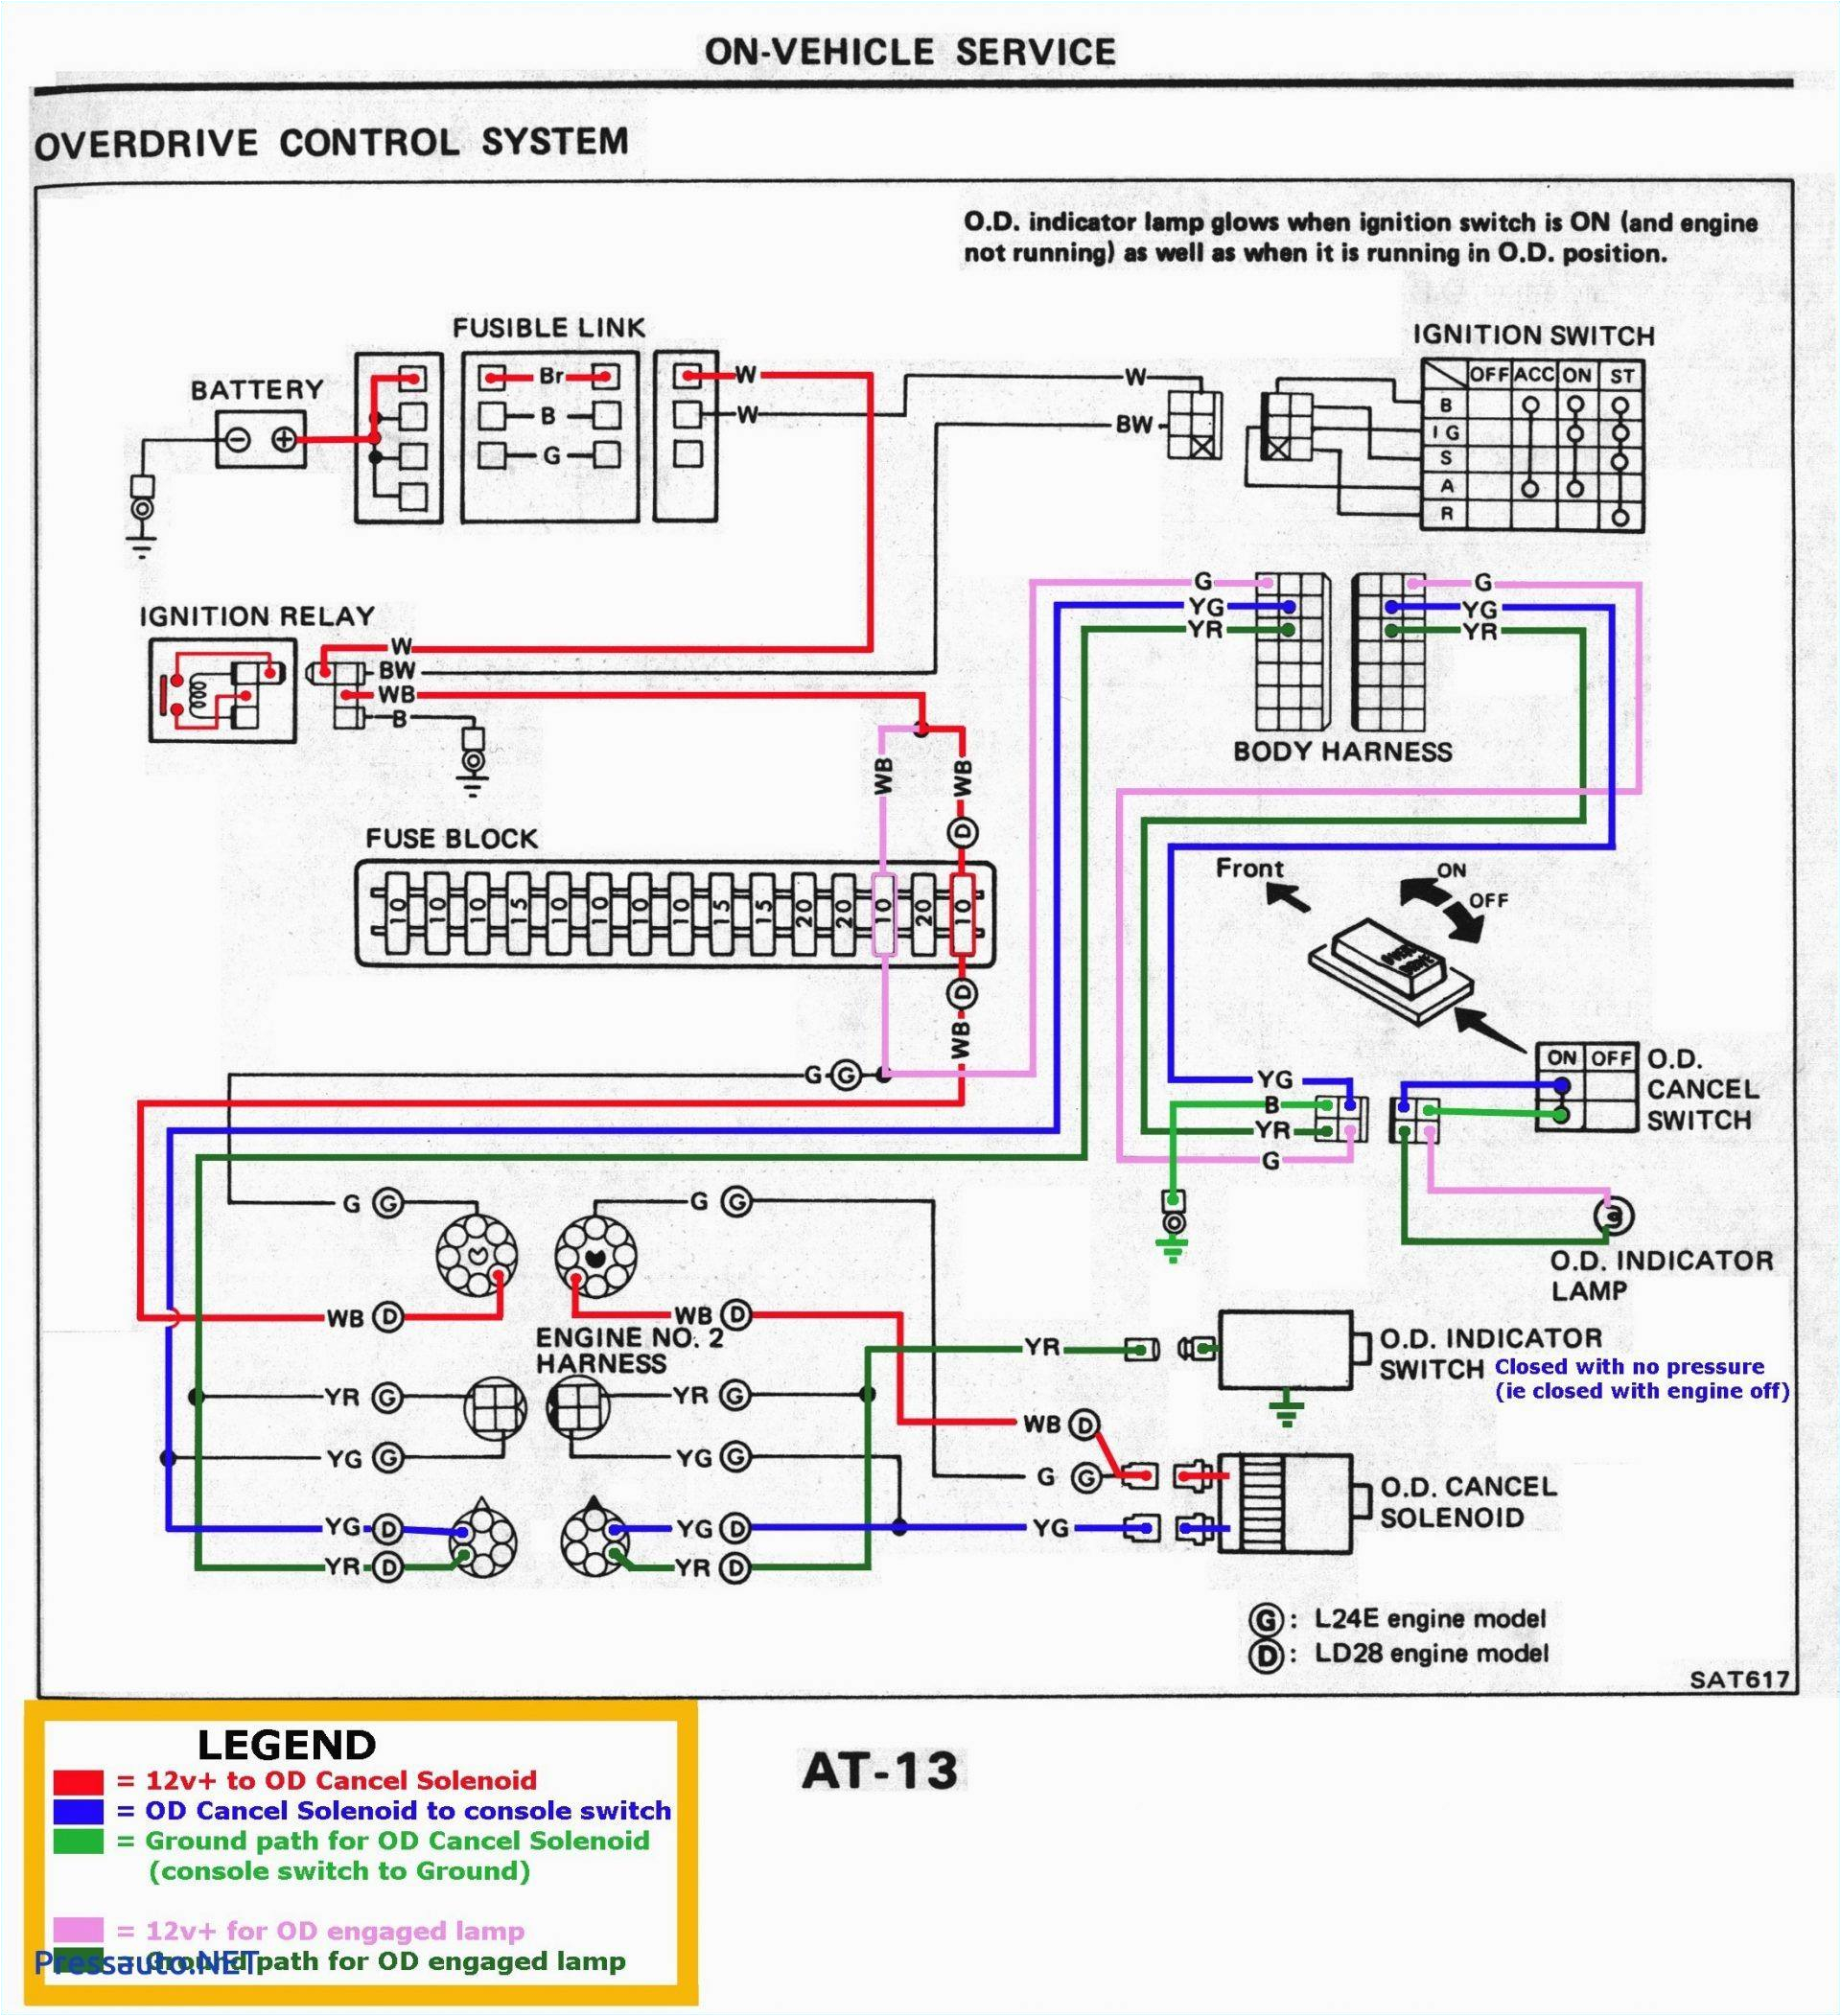 samsung wiring schematic wiring diagram centrewiring samsung schematic smm pircam wiring diagram usedtoyota wiring diagrams schematics